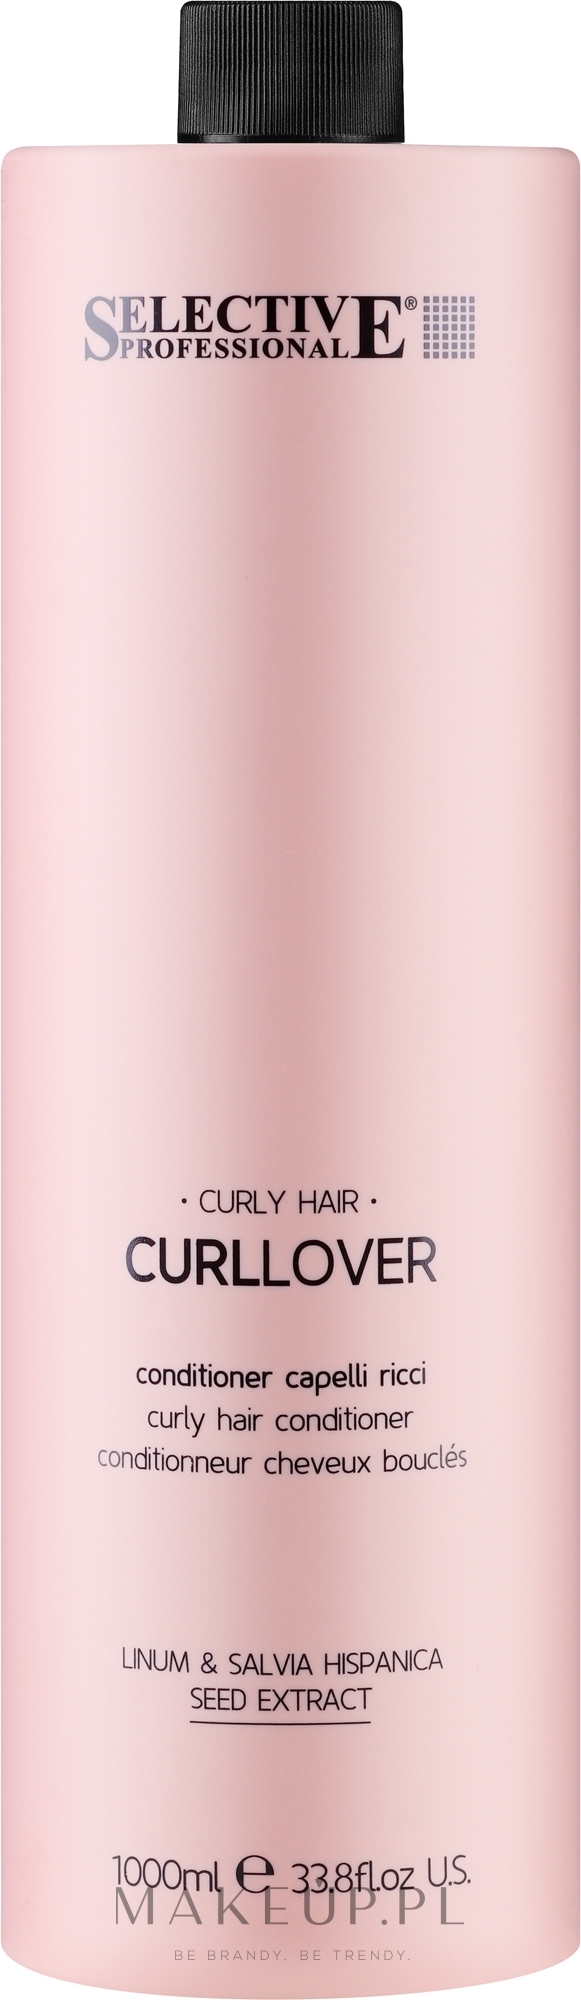 Odżywka do włosów kręconych - Selective Professional Curllover Conditioner — Zdjęcie 1000 ml